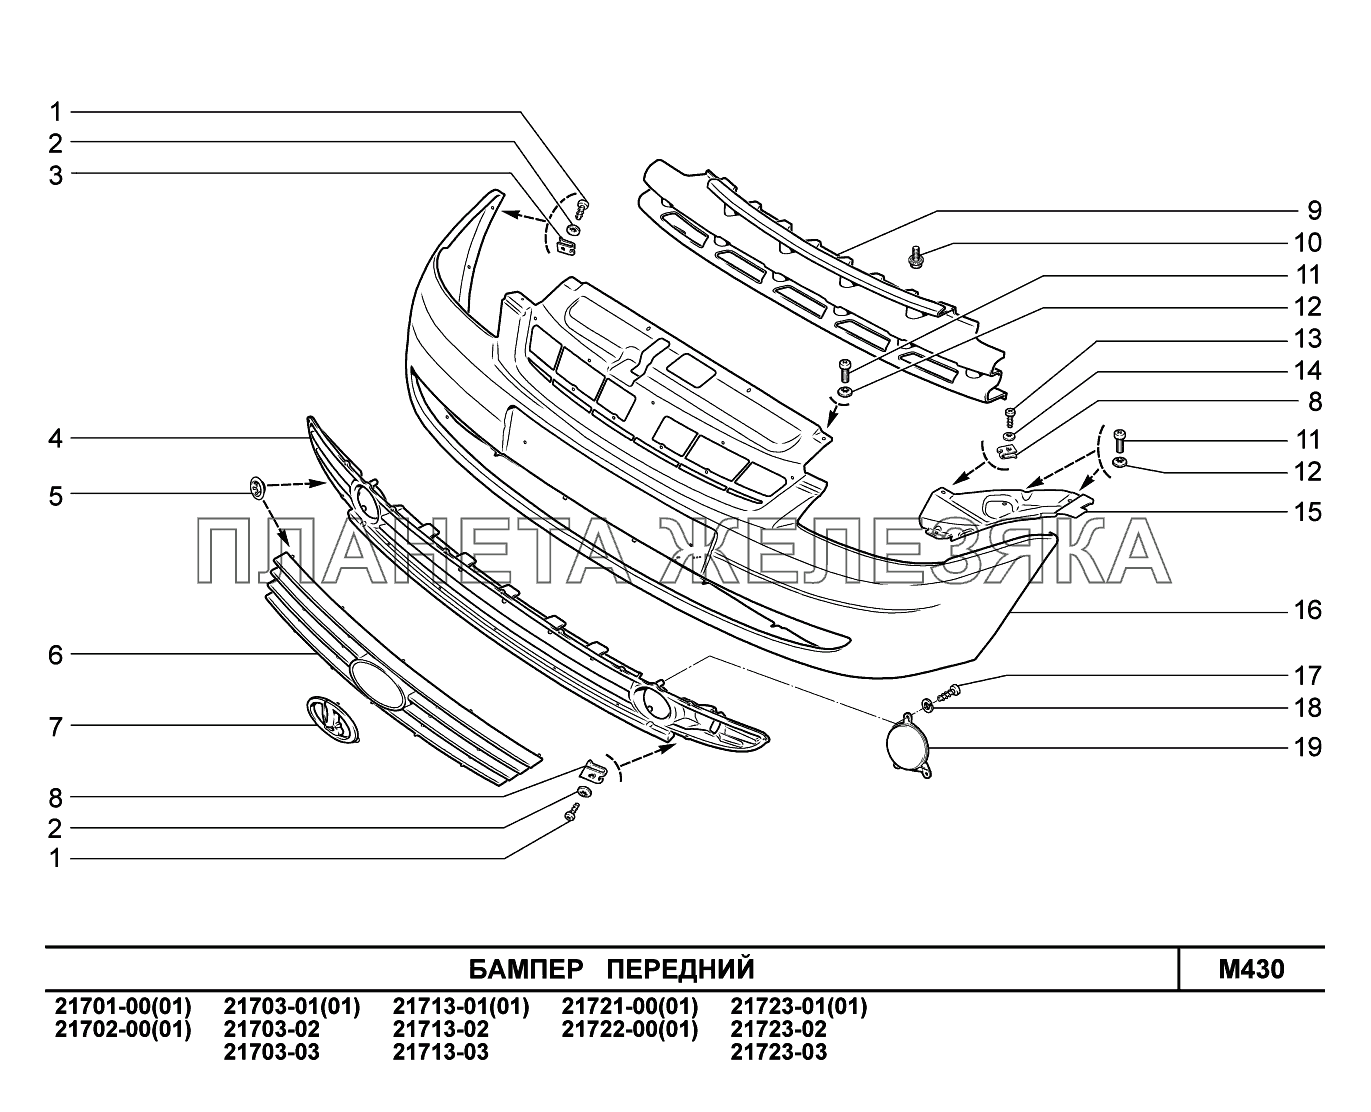 M430. Бампер передний ВАЗ-2170 